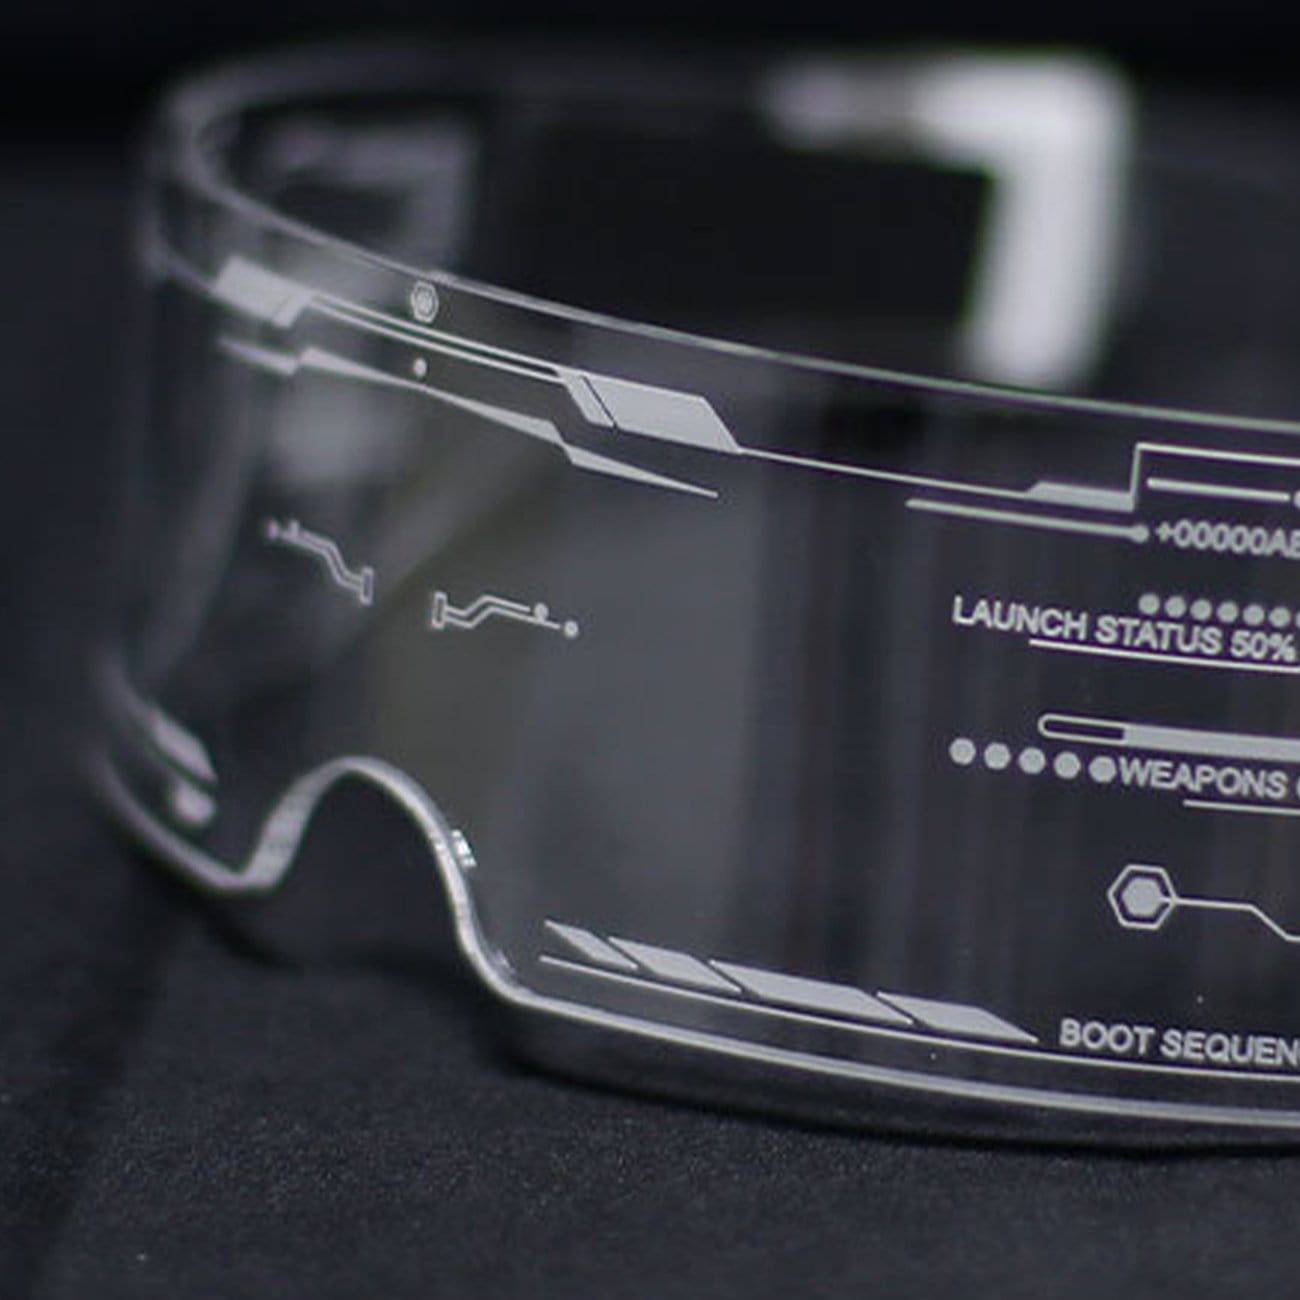 WLS  Cyberpunk Cool Wireless LED Glasses